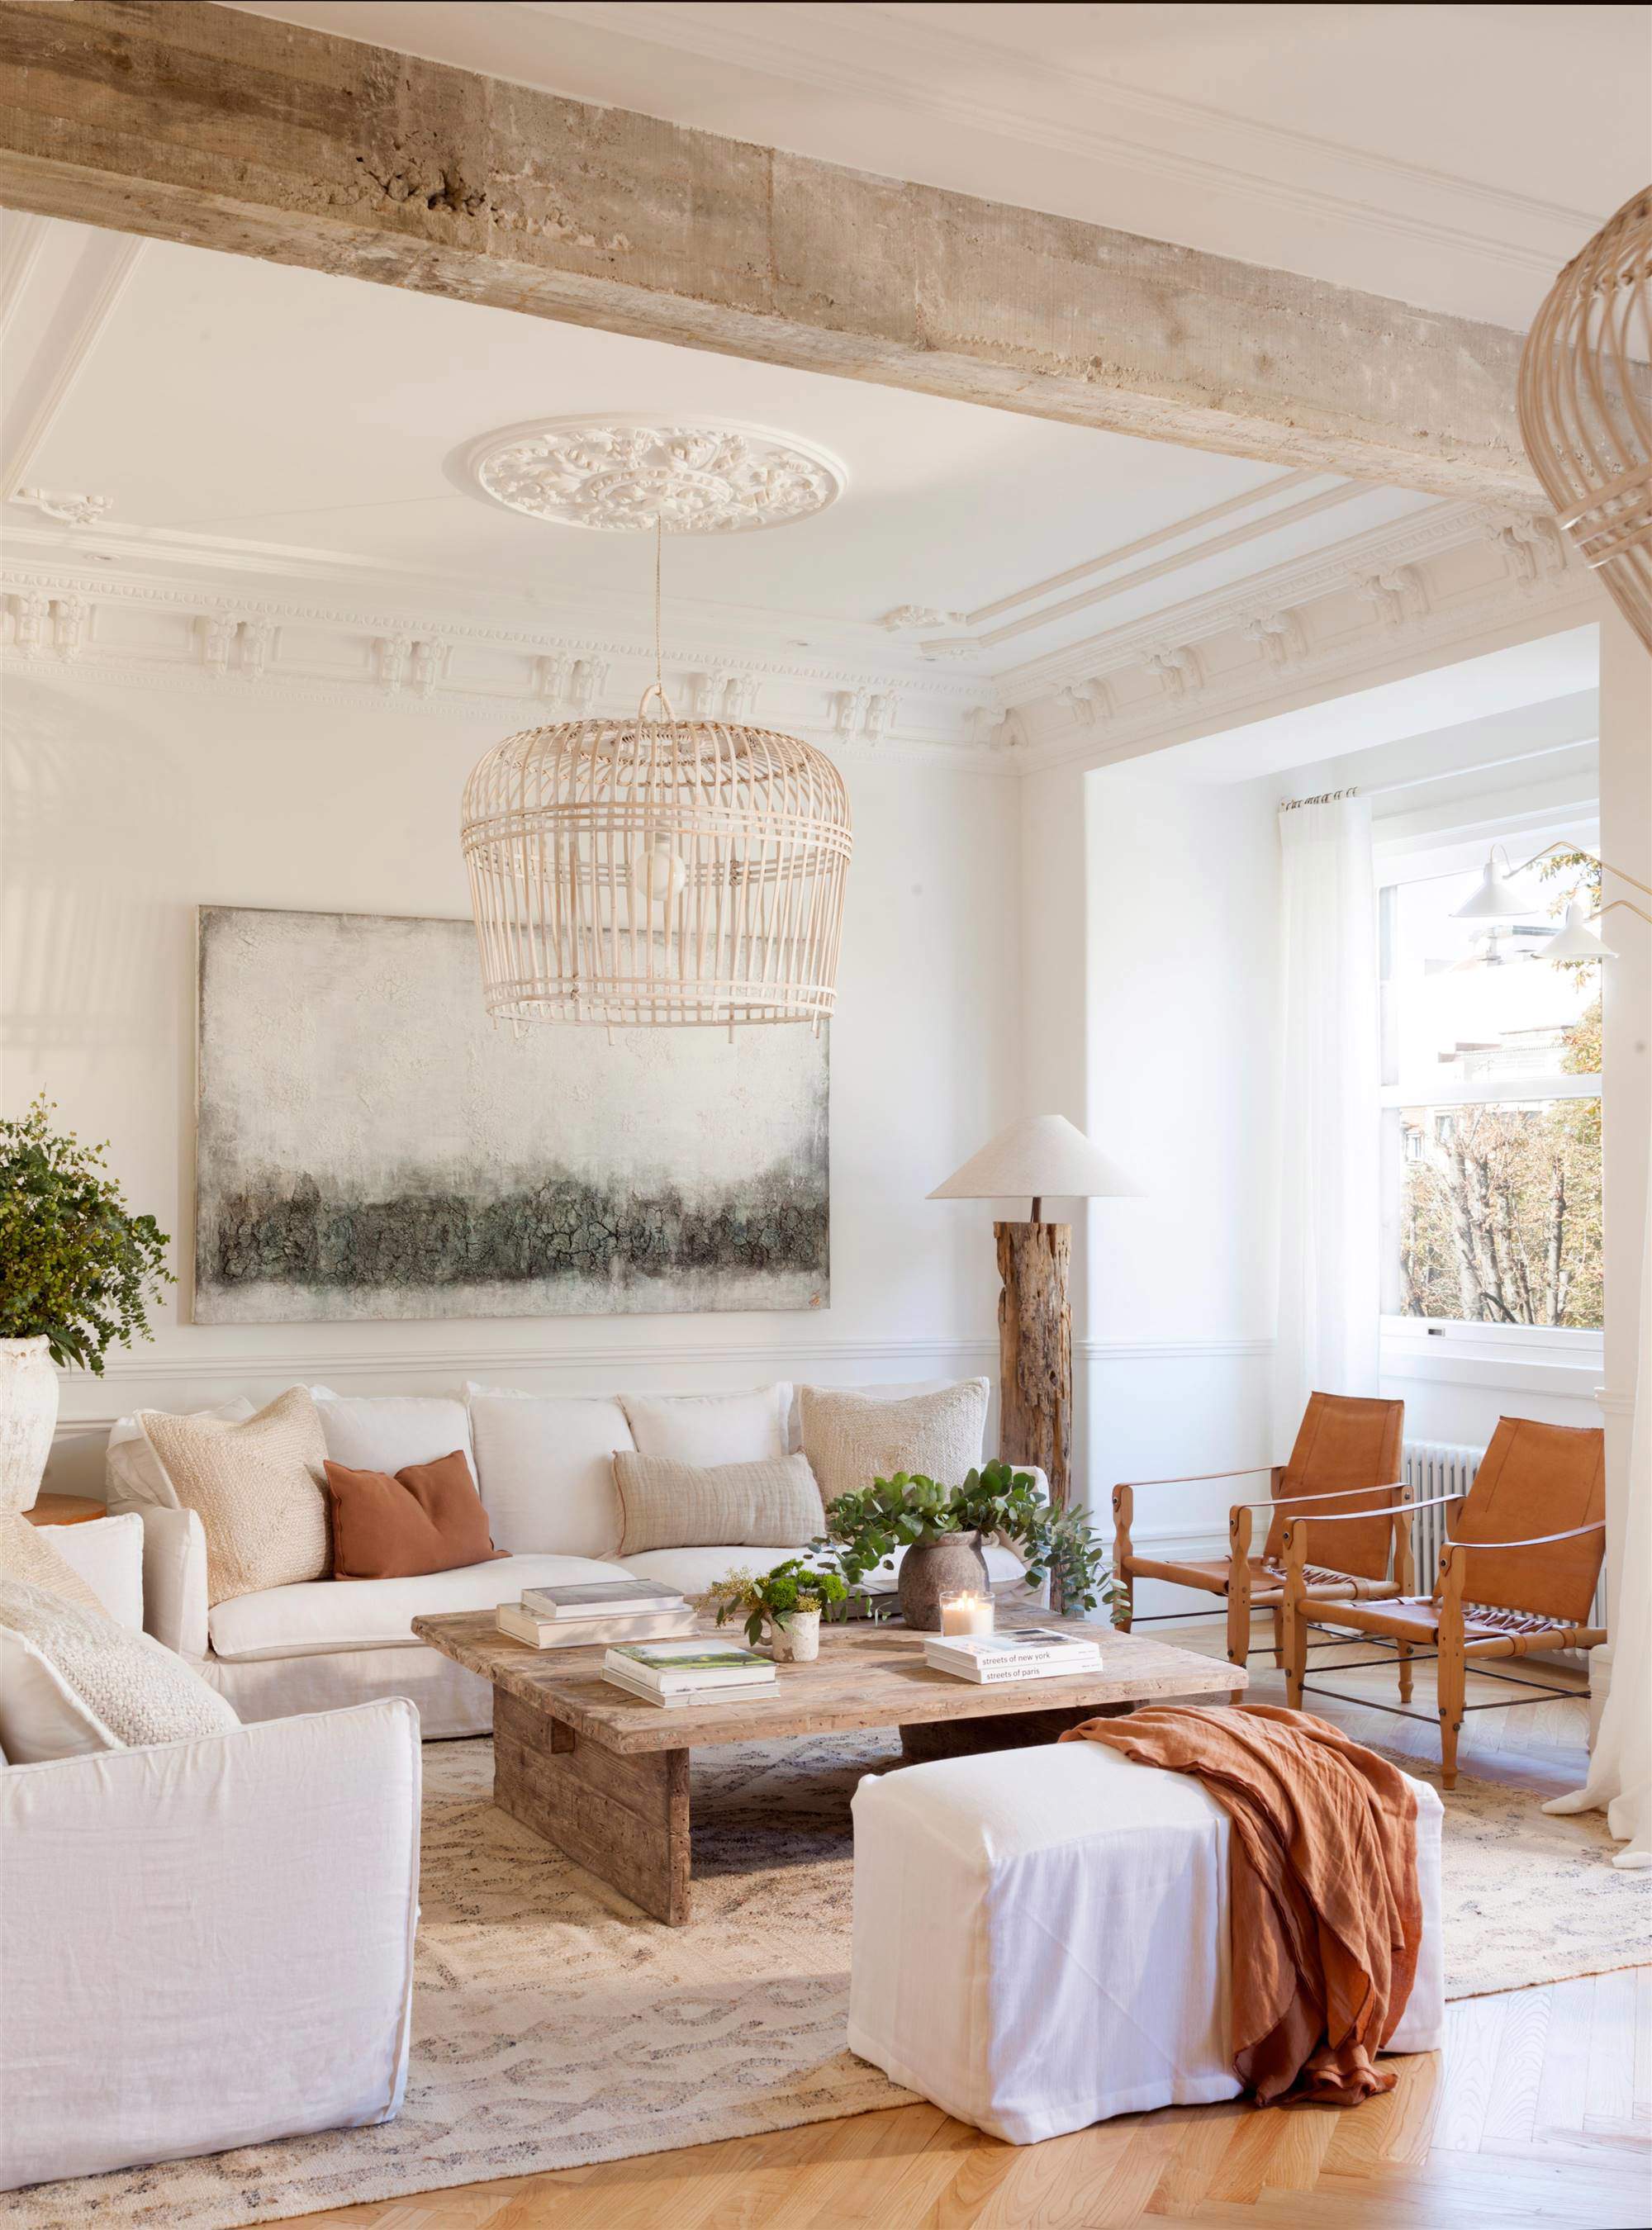 Salón con sofá blanco y elementos arquitectónicos: molduras, vigas.